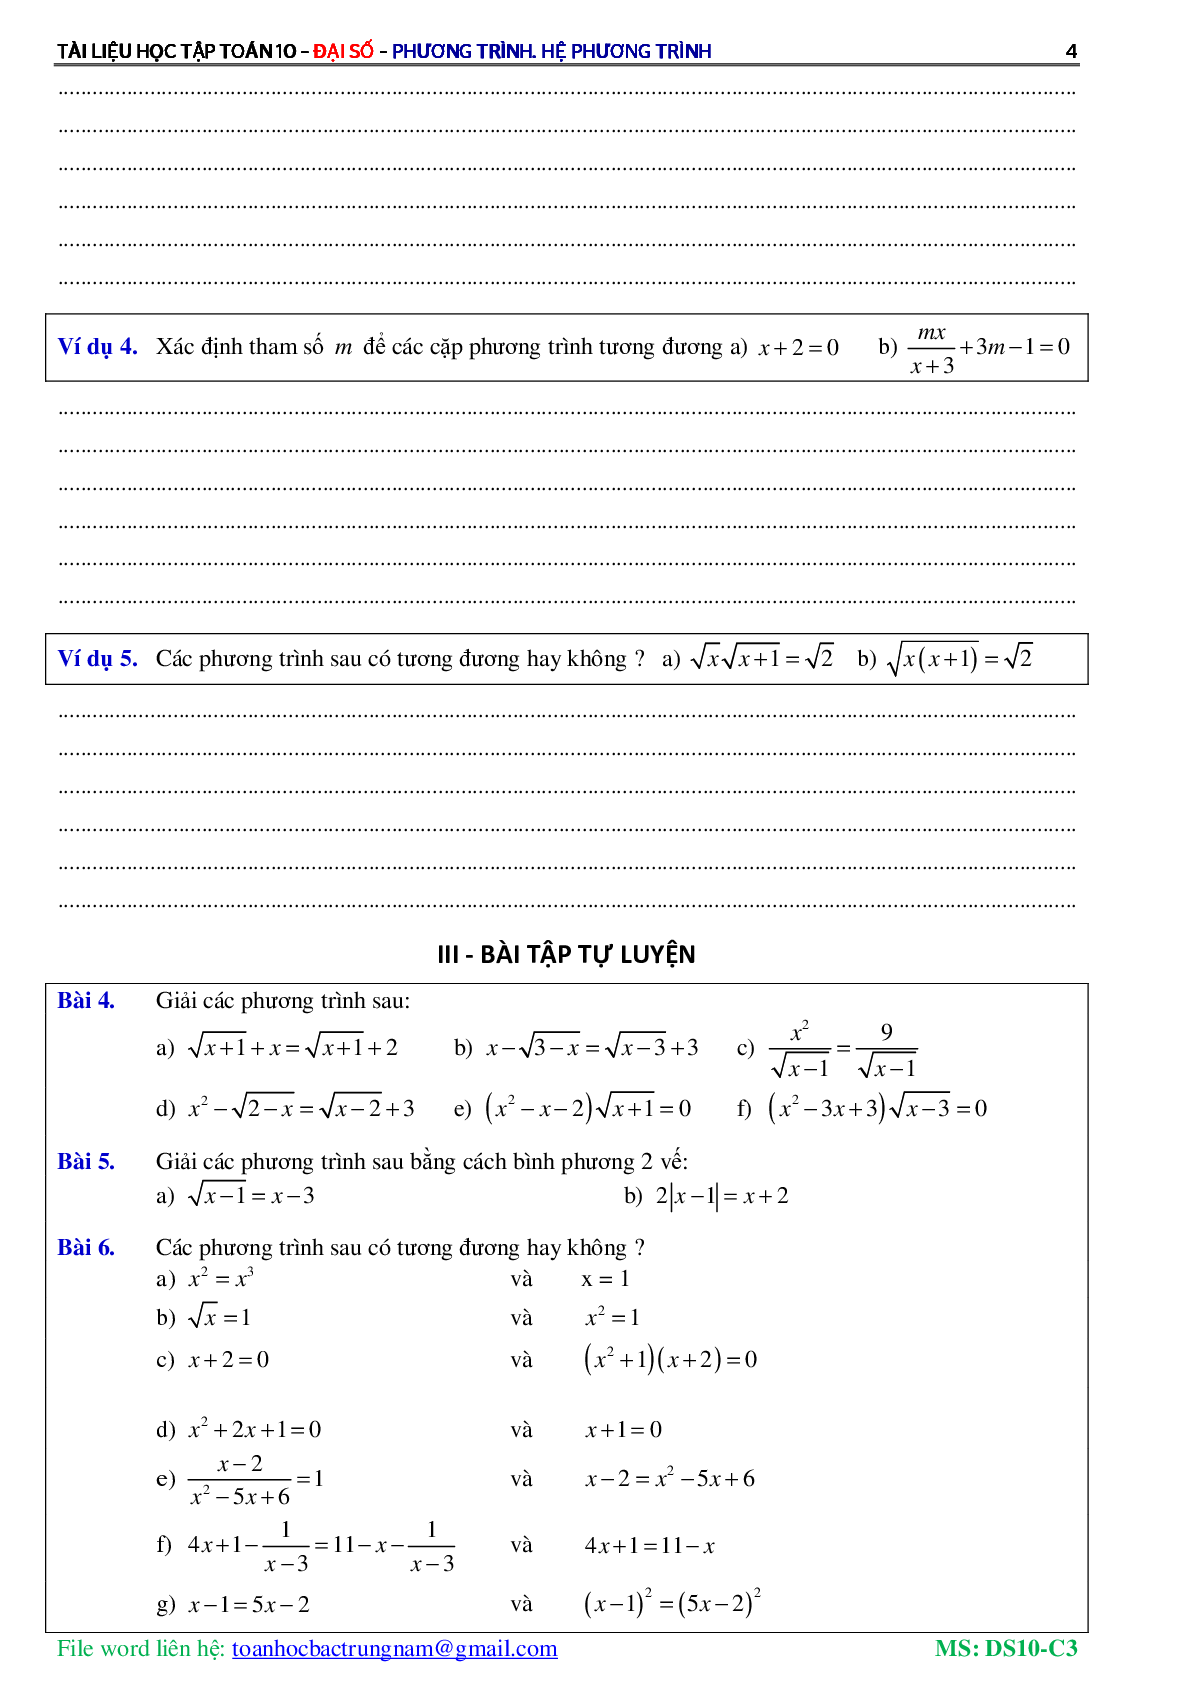 Lý thuyết, bài tập về Phương trình và hệ phương trình có đáp án (trang 5)